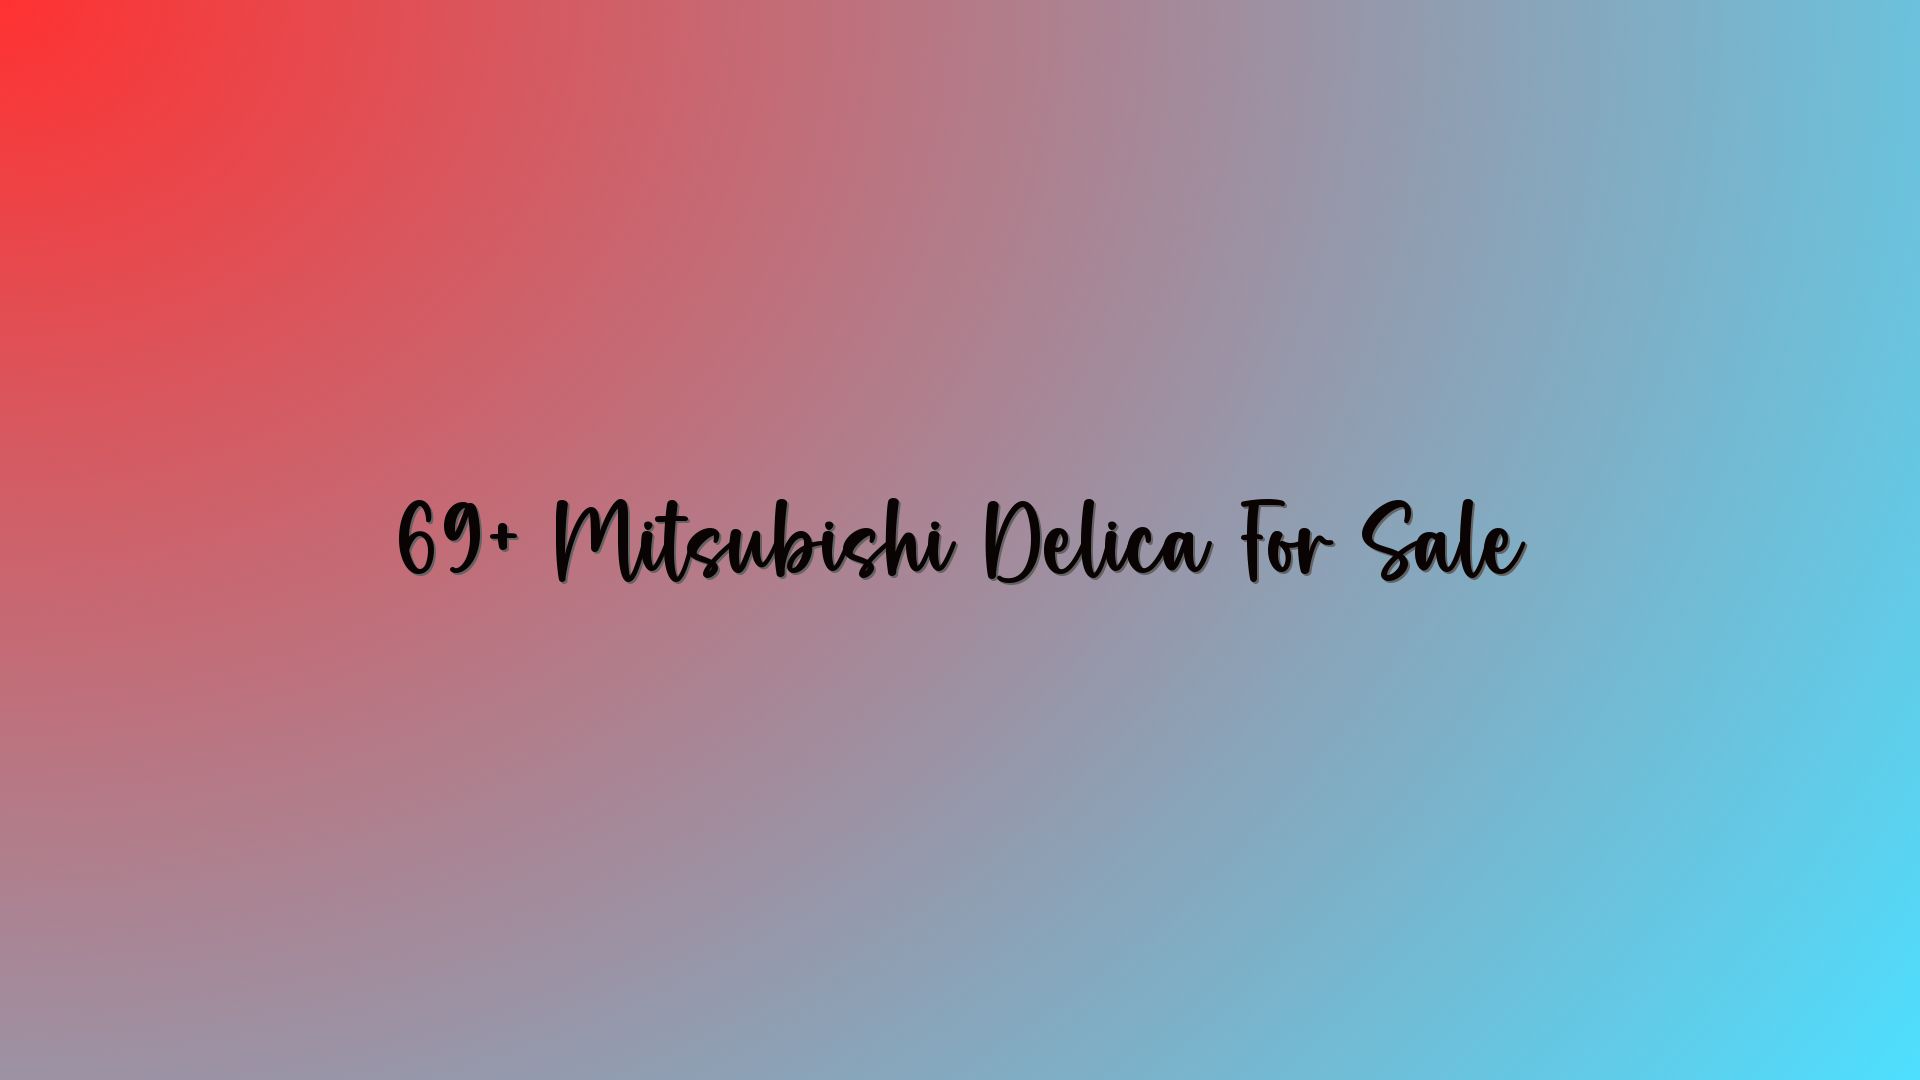 69+ Mitsubishi Delica For Sale